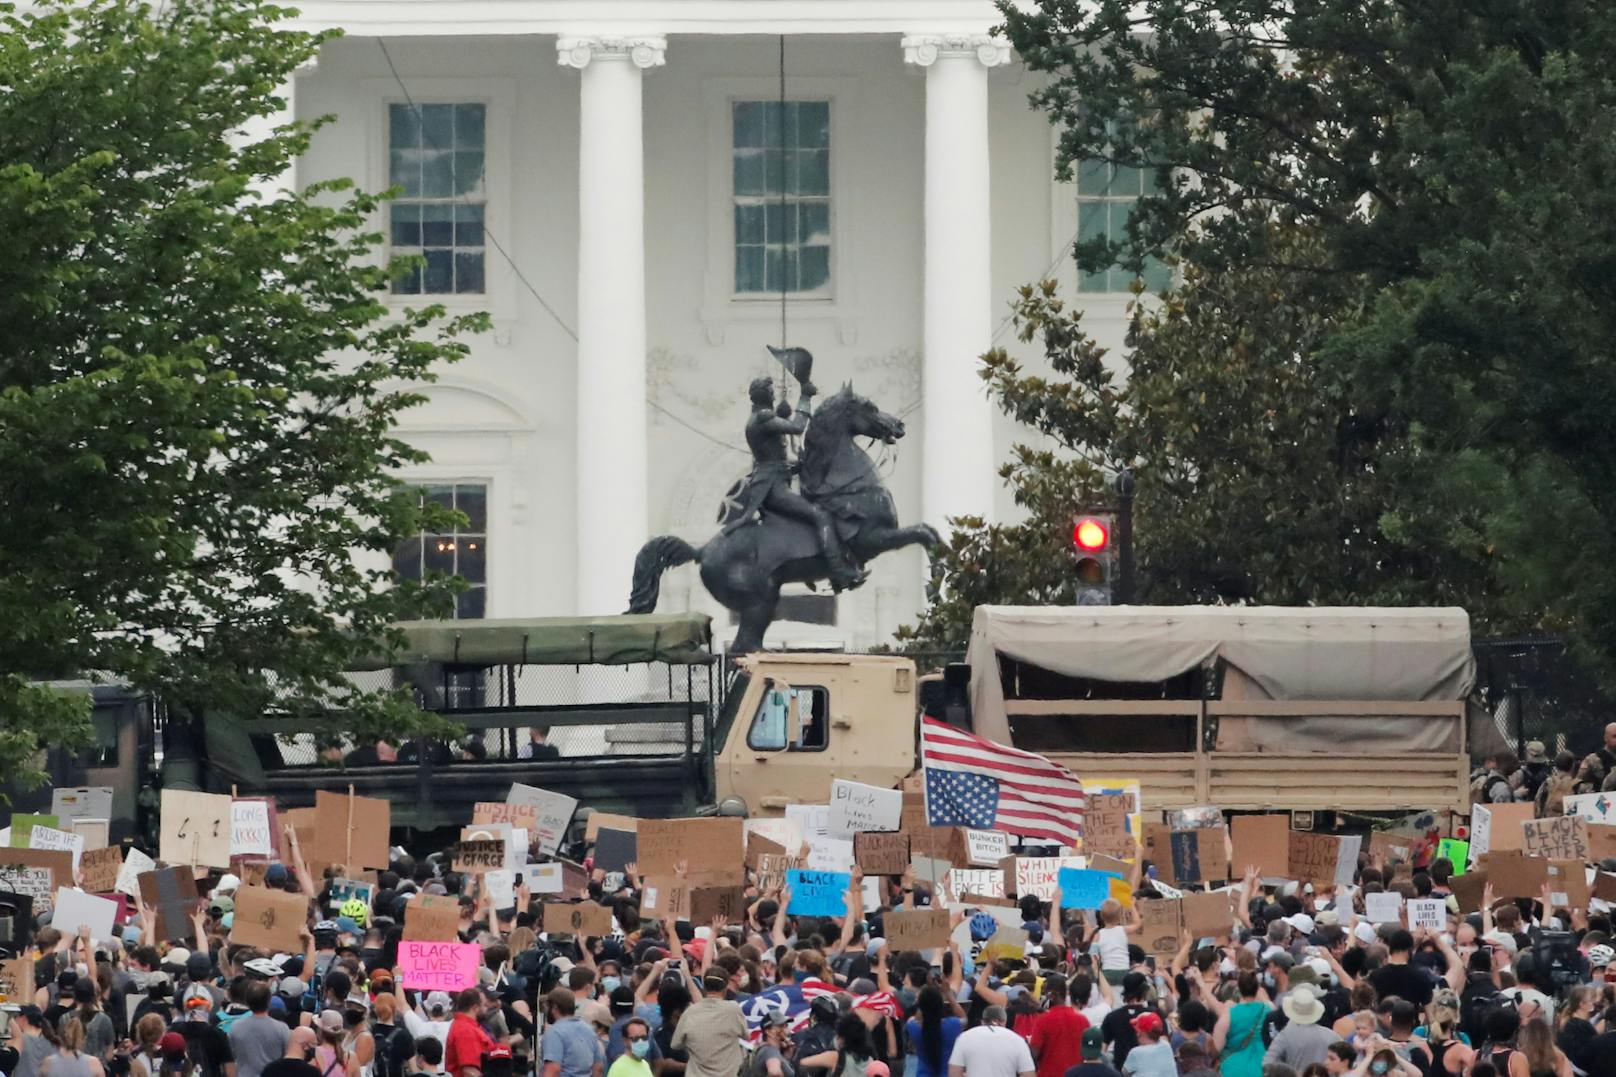 Nach dem Tod von George Floyd protestieren Tausende auch vor dem Weißen Haus. Donald Trump soll dabei in einen Bunker geflüchtet sein - er bestreitet das.